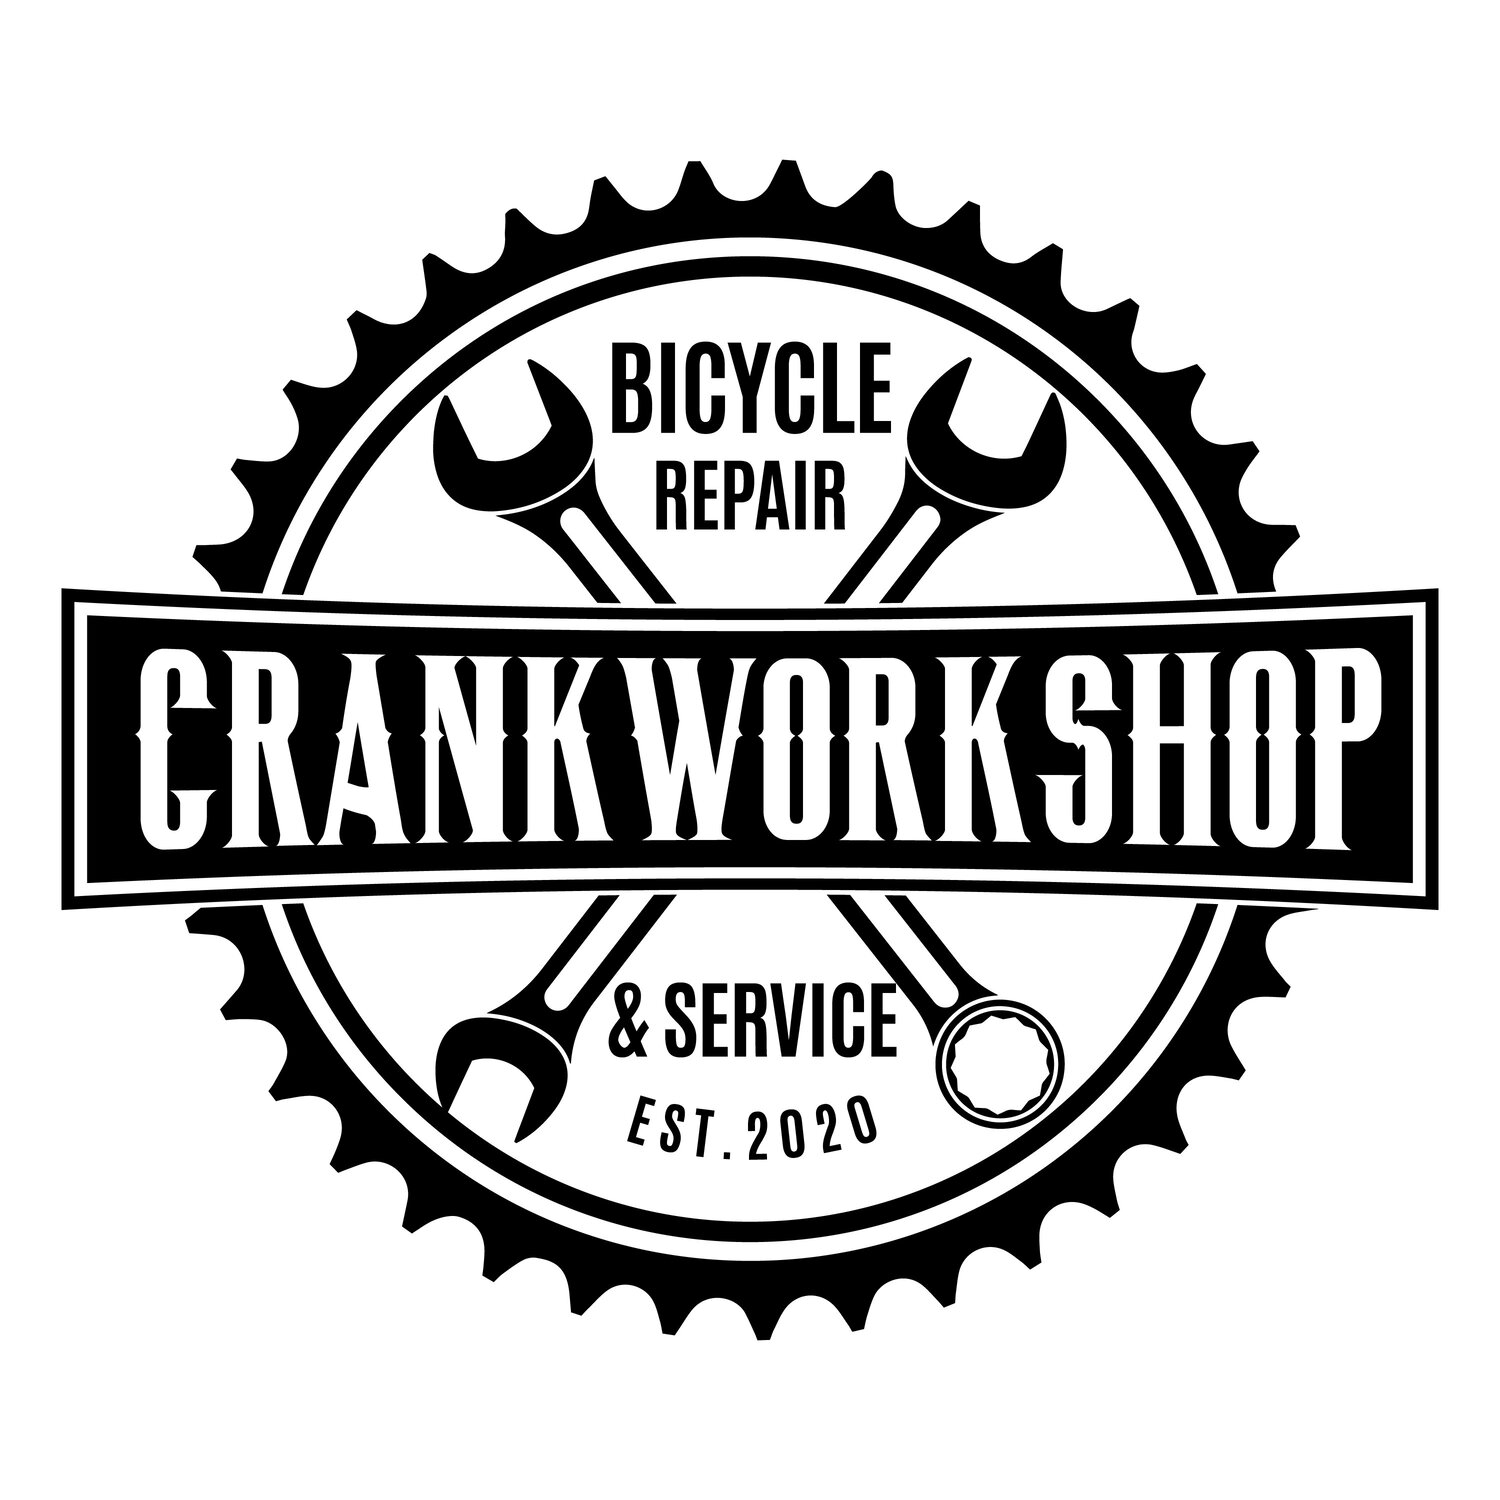 Crankworkshop - Bicycle repair &amp; service